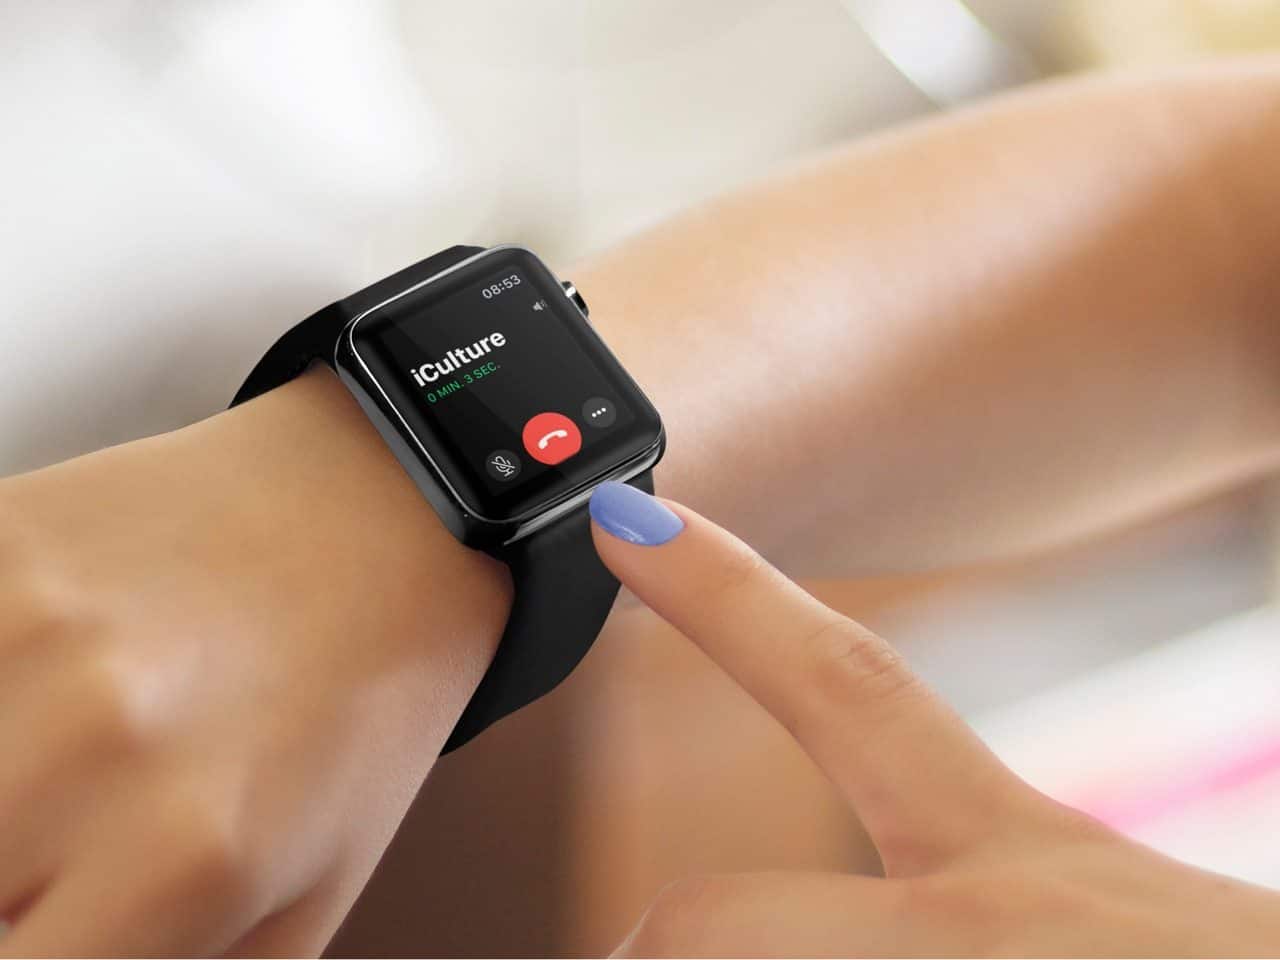 Bellen met je Apple Watch: gesprek ophangen.